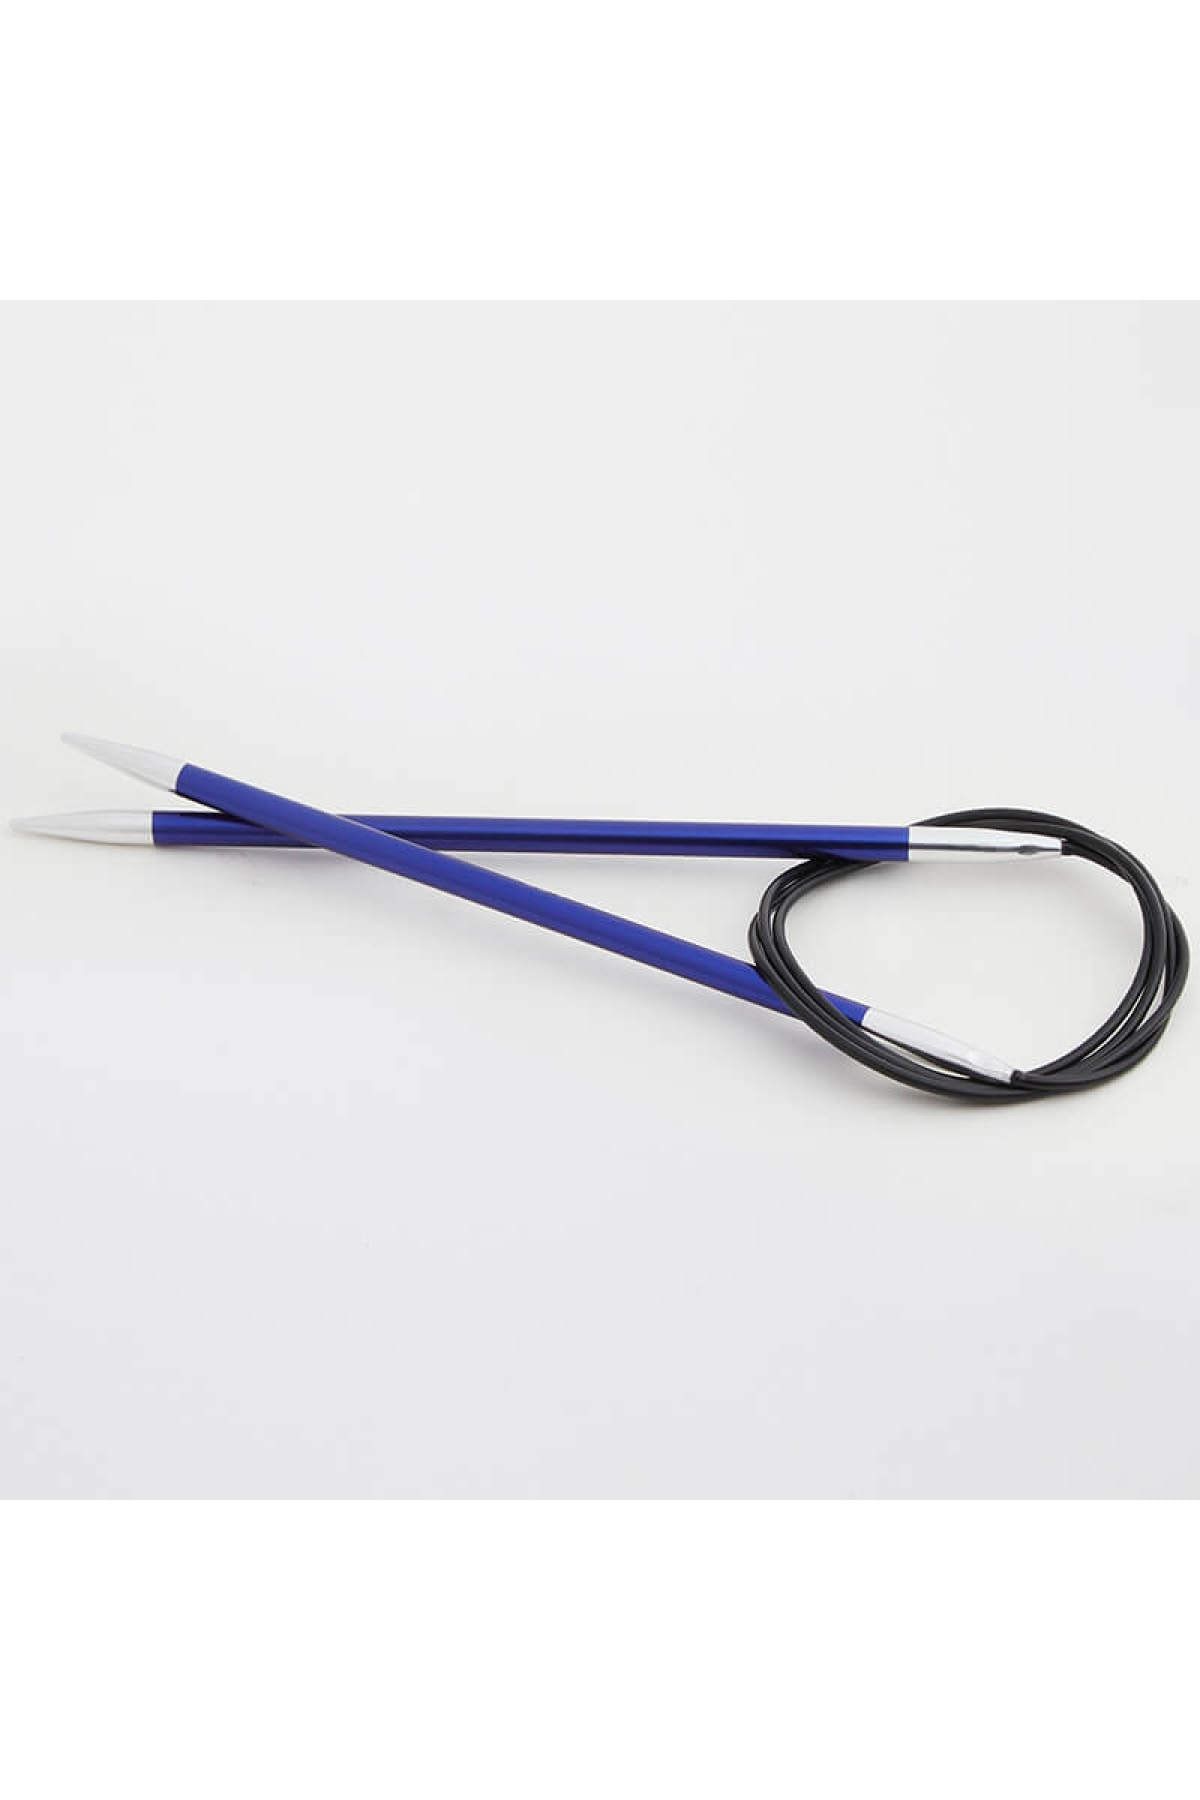 Knitpro Zing Sabit Misinalı Şiş 100cm / 4,50mm